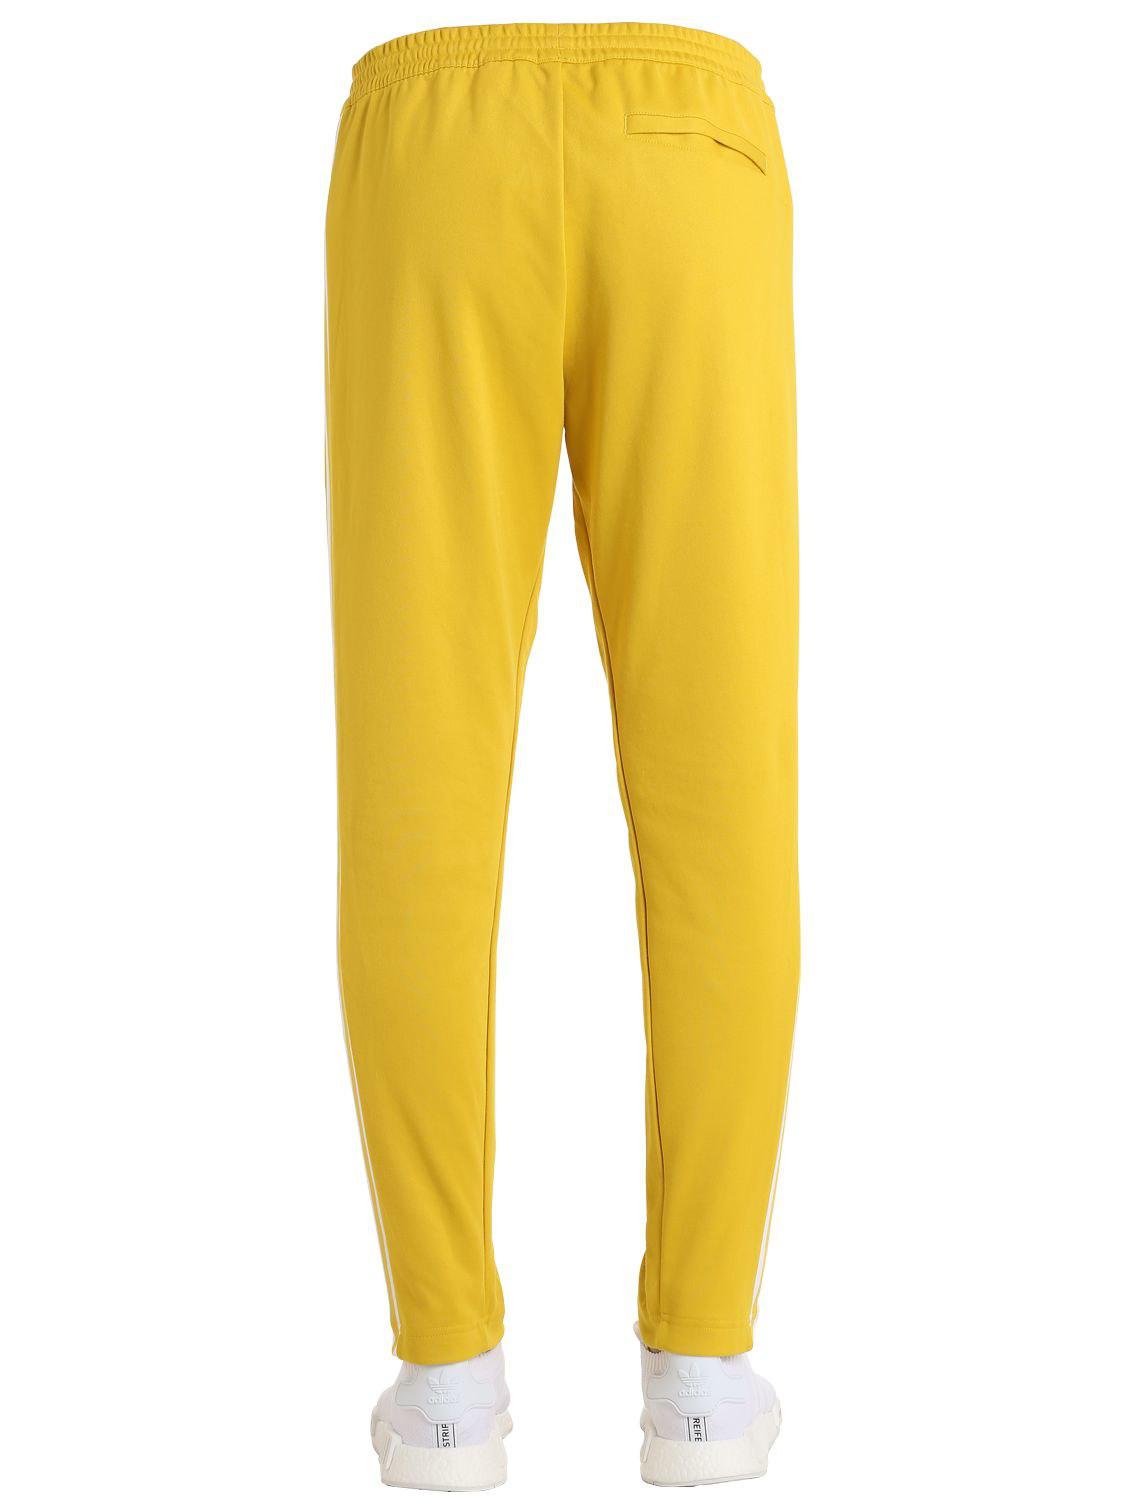 pantalon jaune adidas reduced 2e1a3 7bd2e